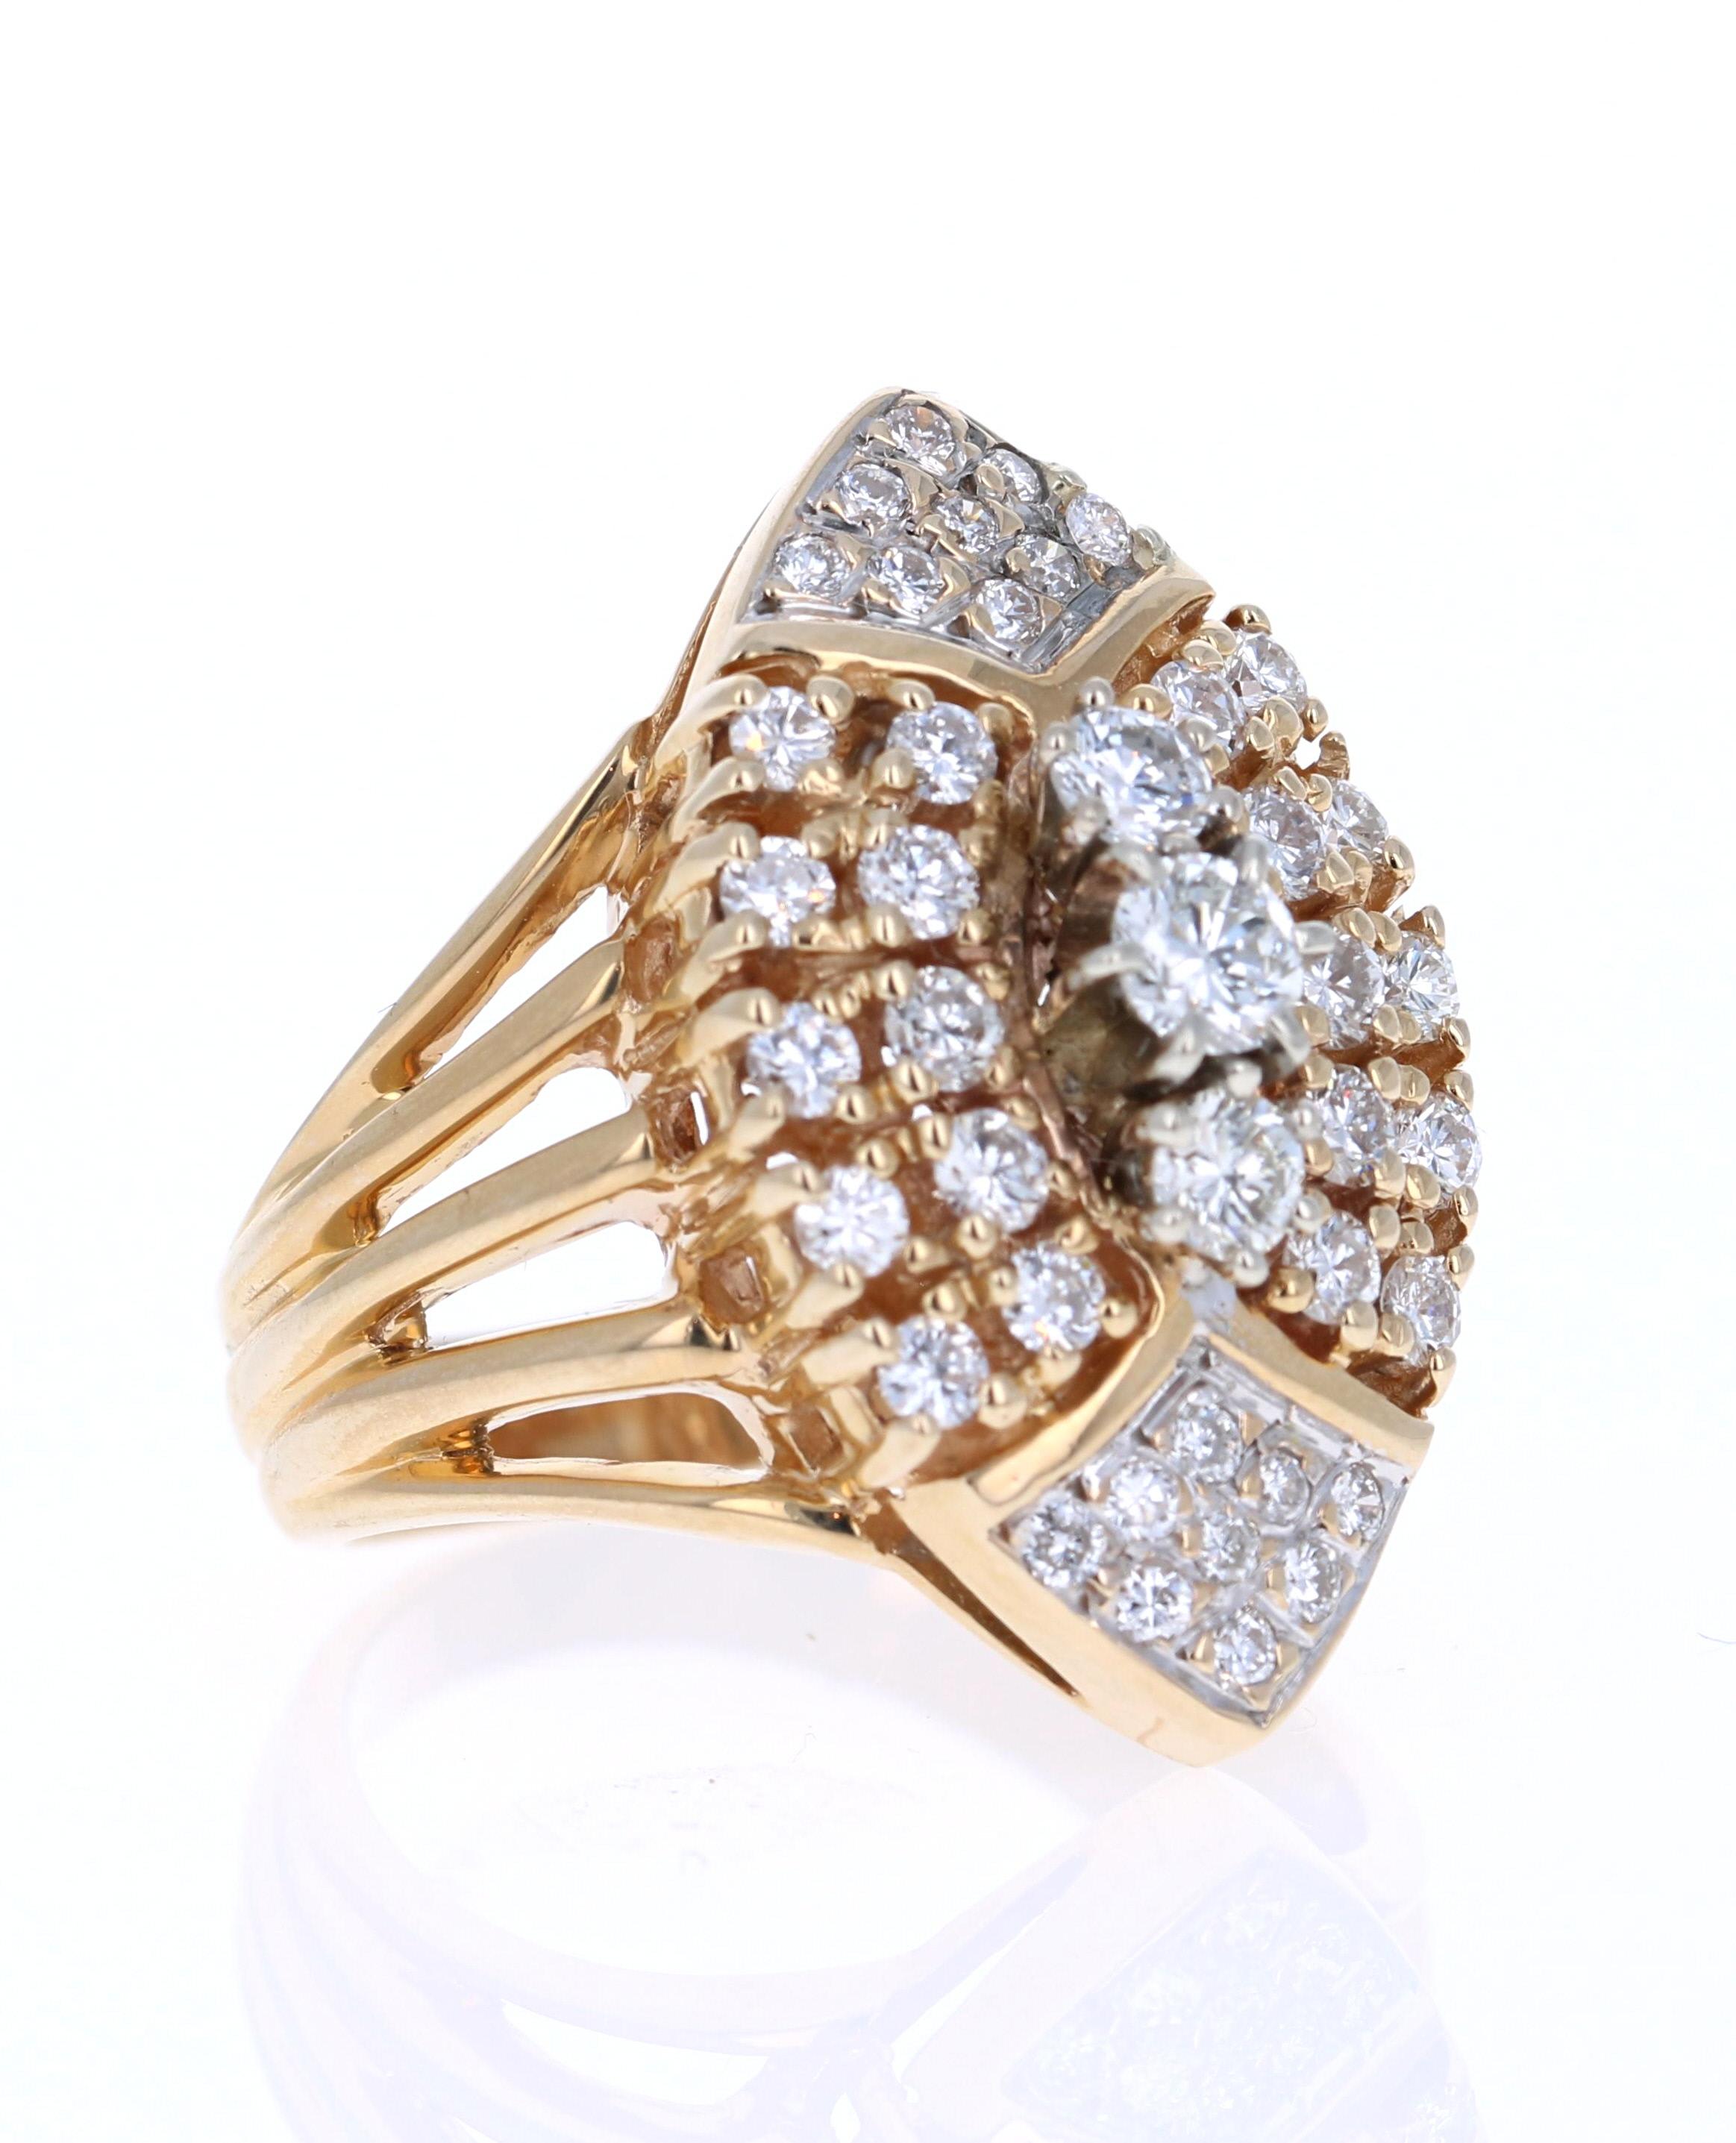 Dieser einzigartige Ring hat 41 Diamanten im Rundschliff mit einem Gewicht von 1,25 Karat (Reinheit: VS, Farbe: F)

Der Ring ist in 14 Karat Gelbgold gefasst und hat ein ungefähres Gewicht von 9,2 Gramm. 

Der Ring hat die Größe 7 und kann bei